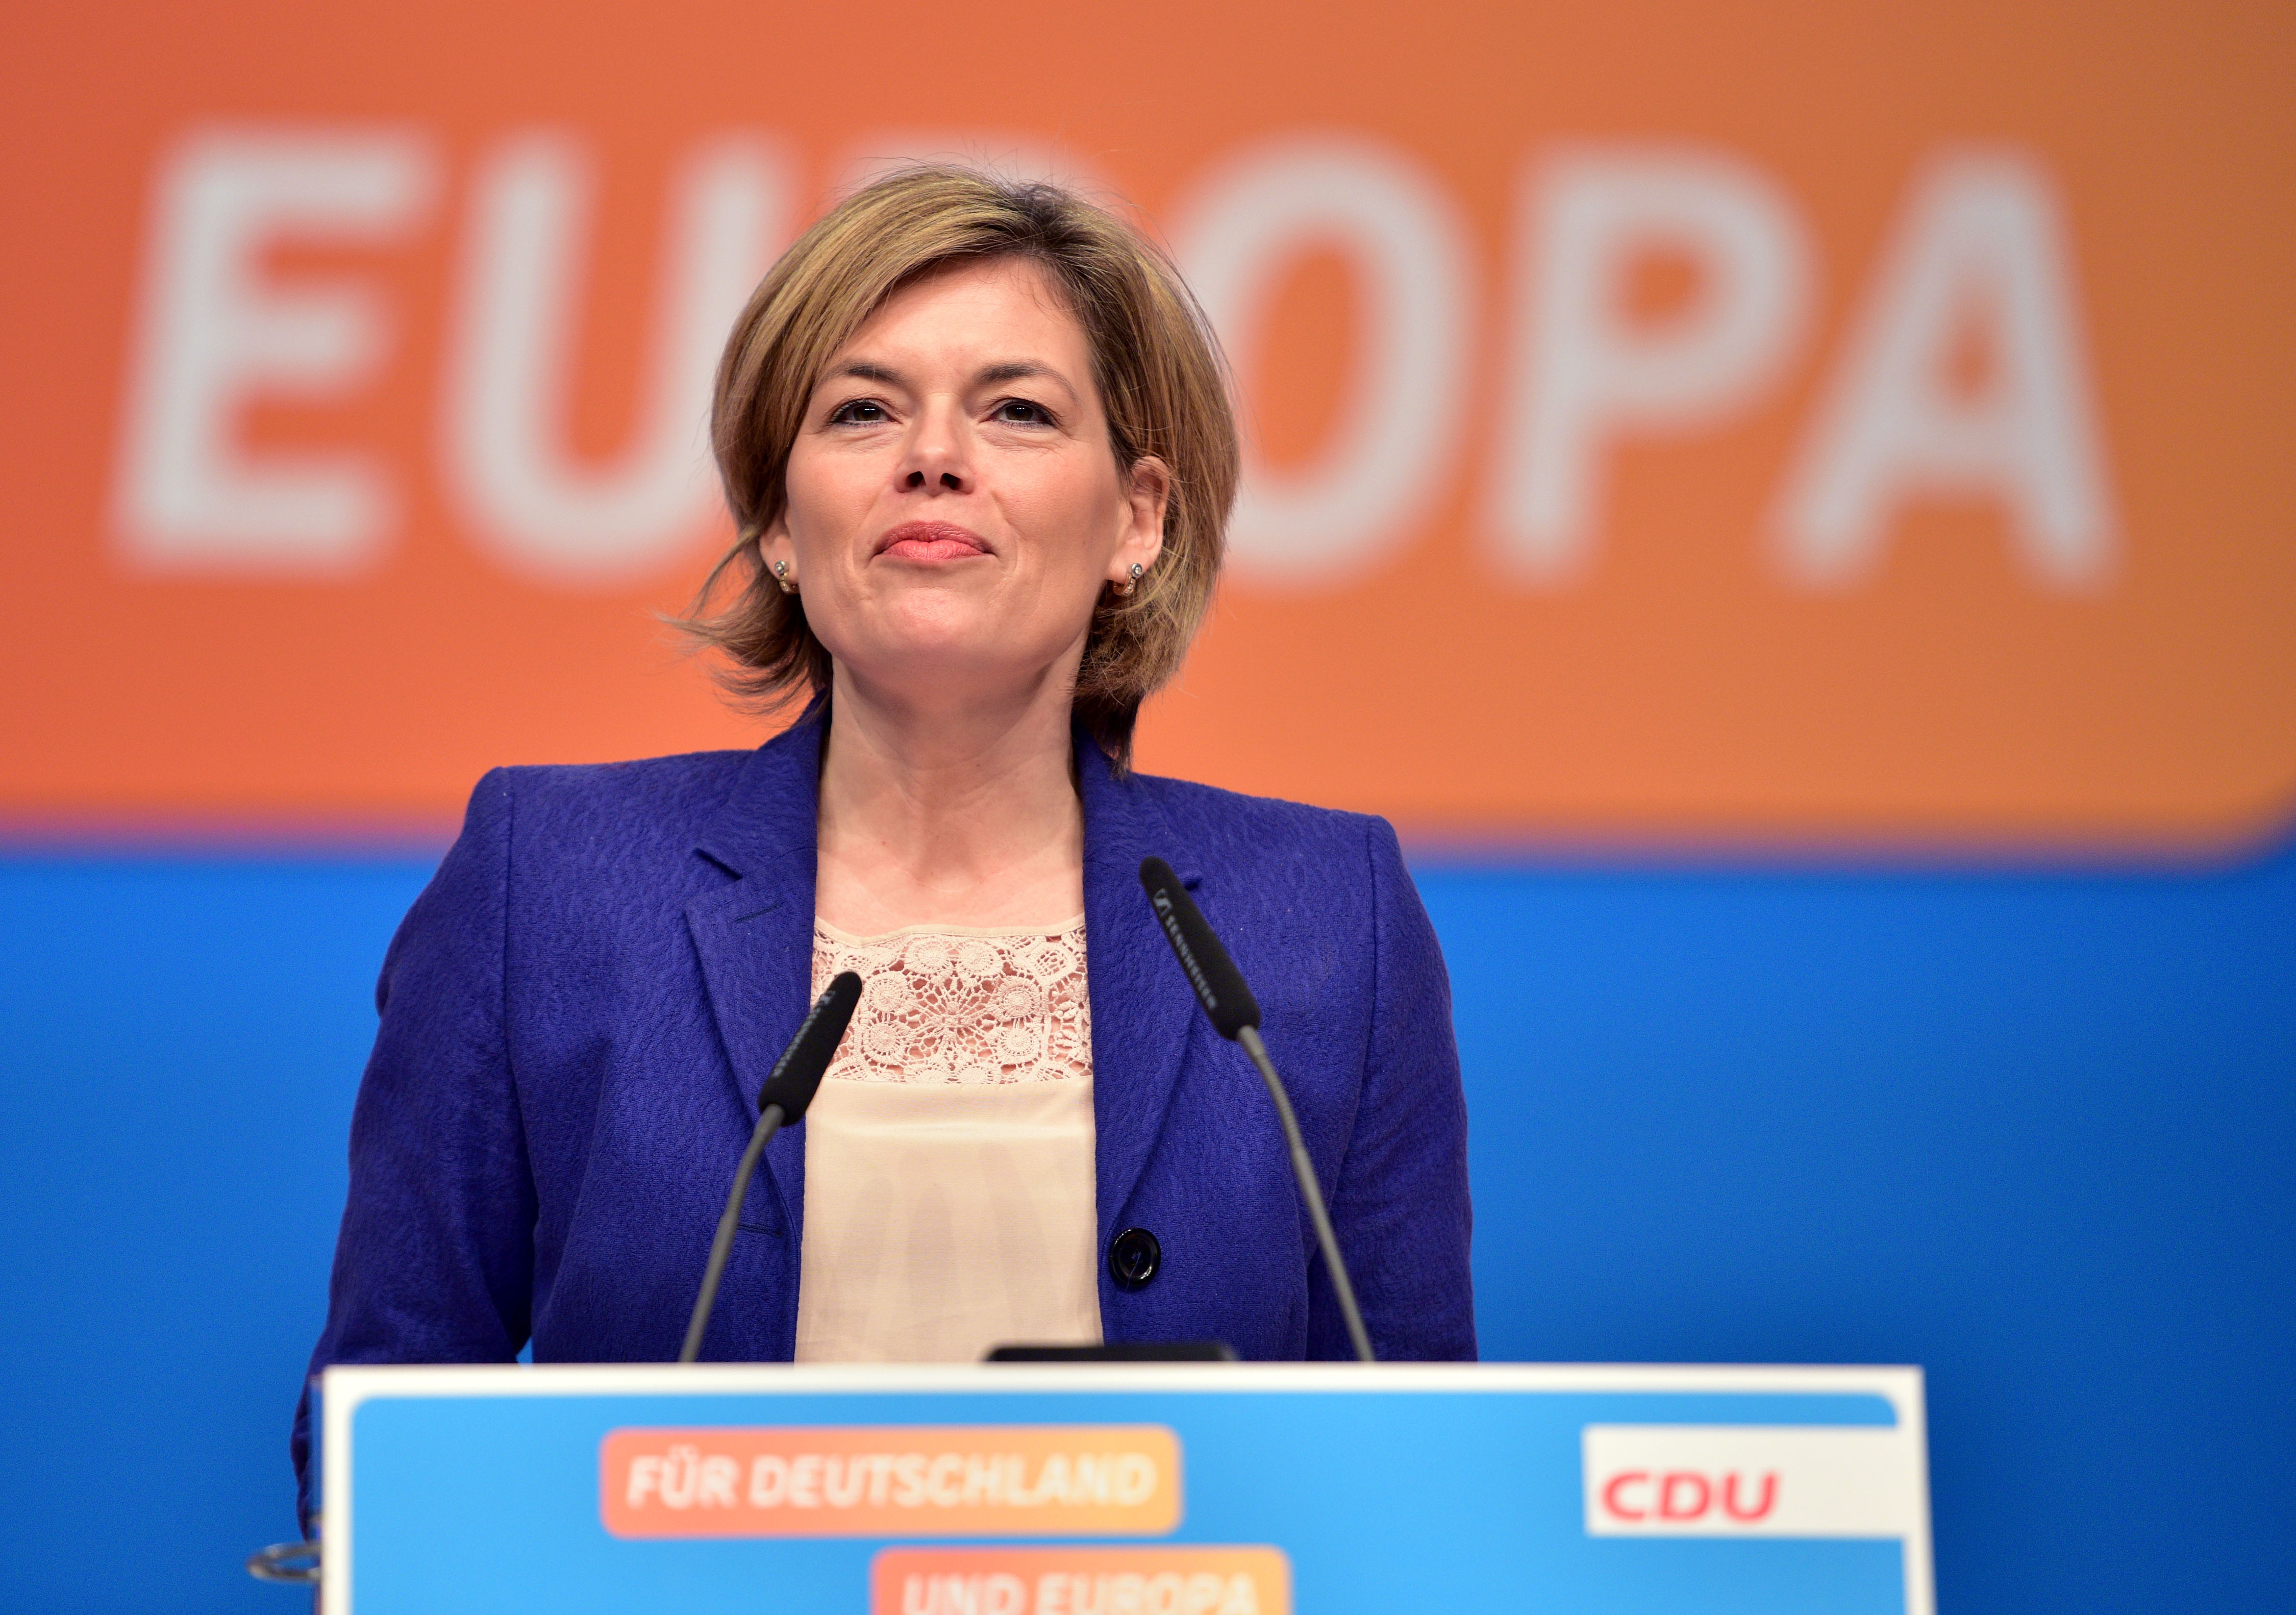 Wahlkampf-Interview mit Bild: So präsentiert CDU-Vize Klöckner Merkels Flüchtlingspolitik